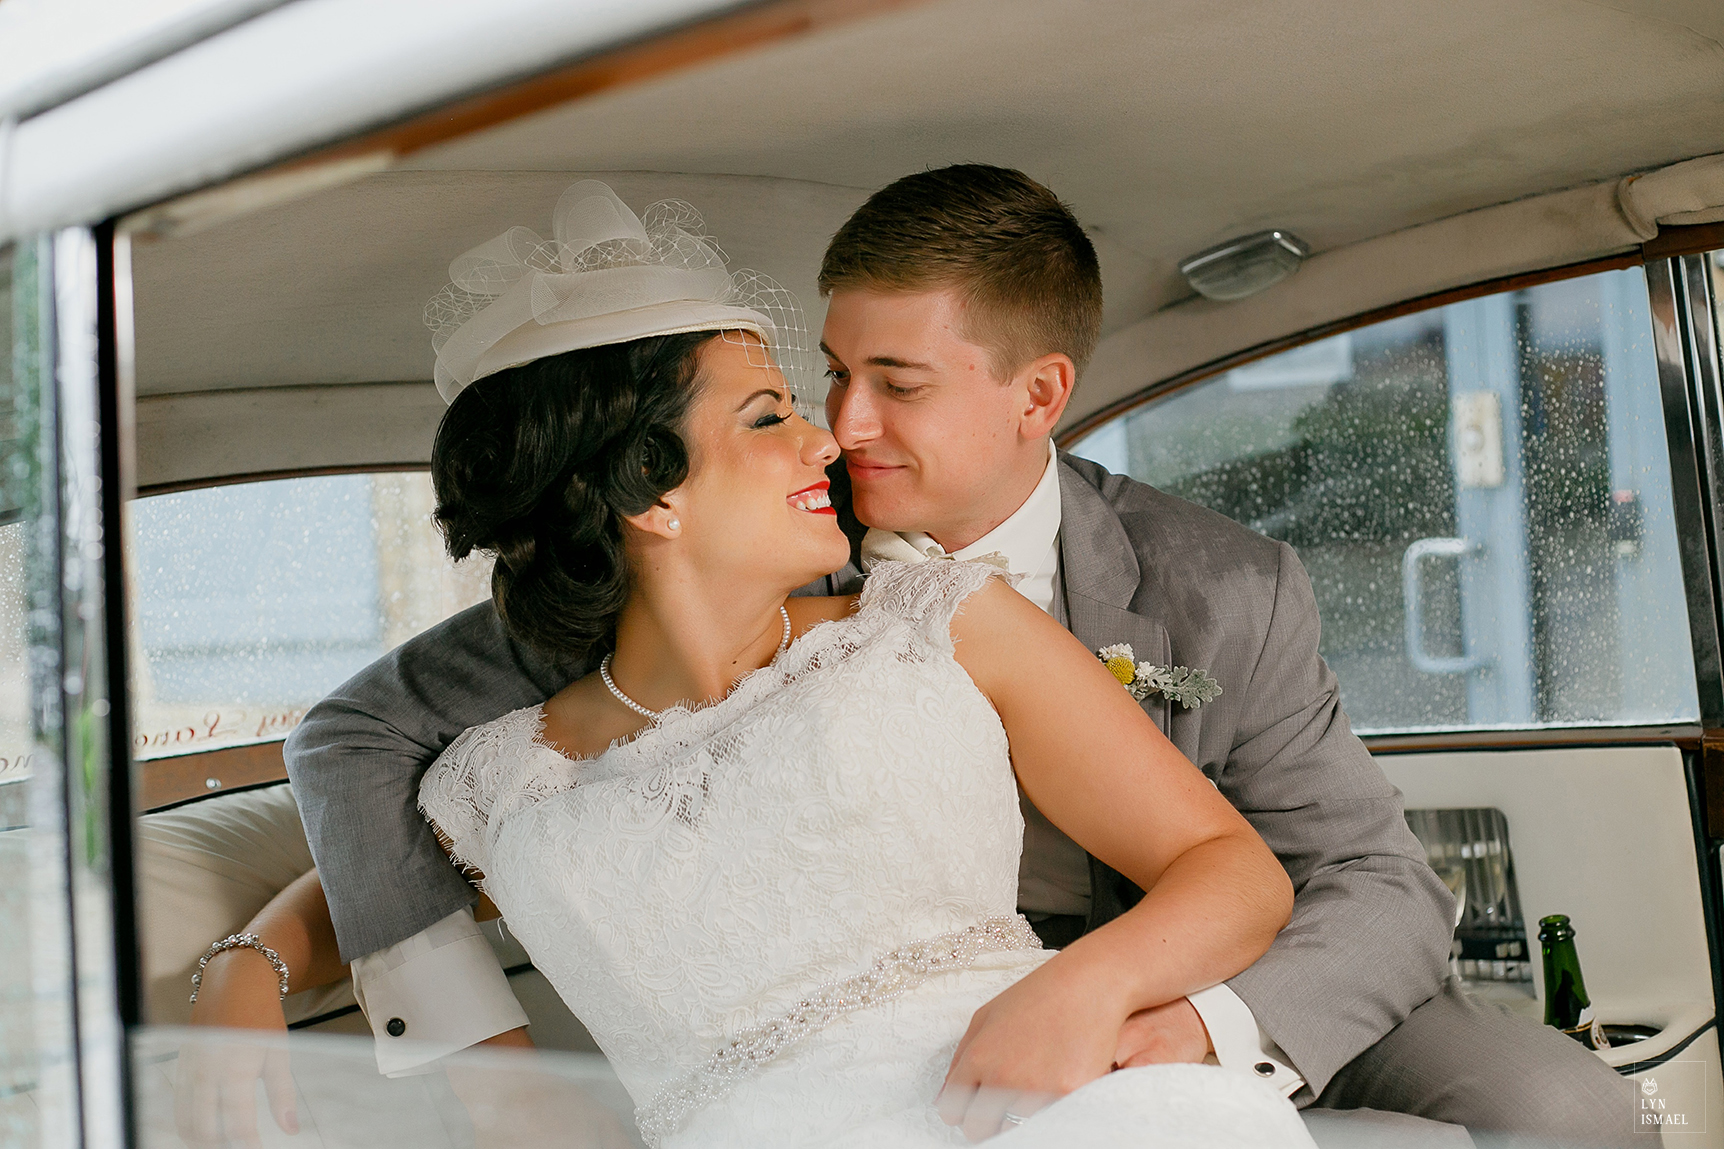 Bride and groom inside their rented vintage car at a wedding in Waterloo, Ontario.